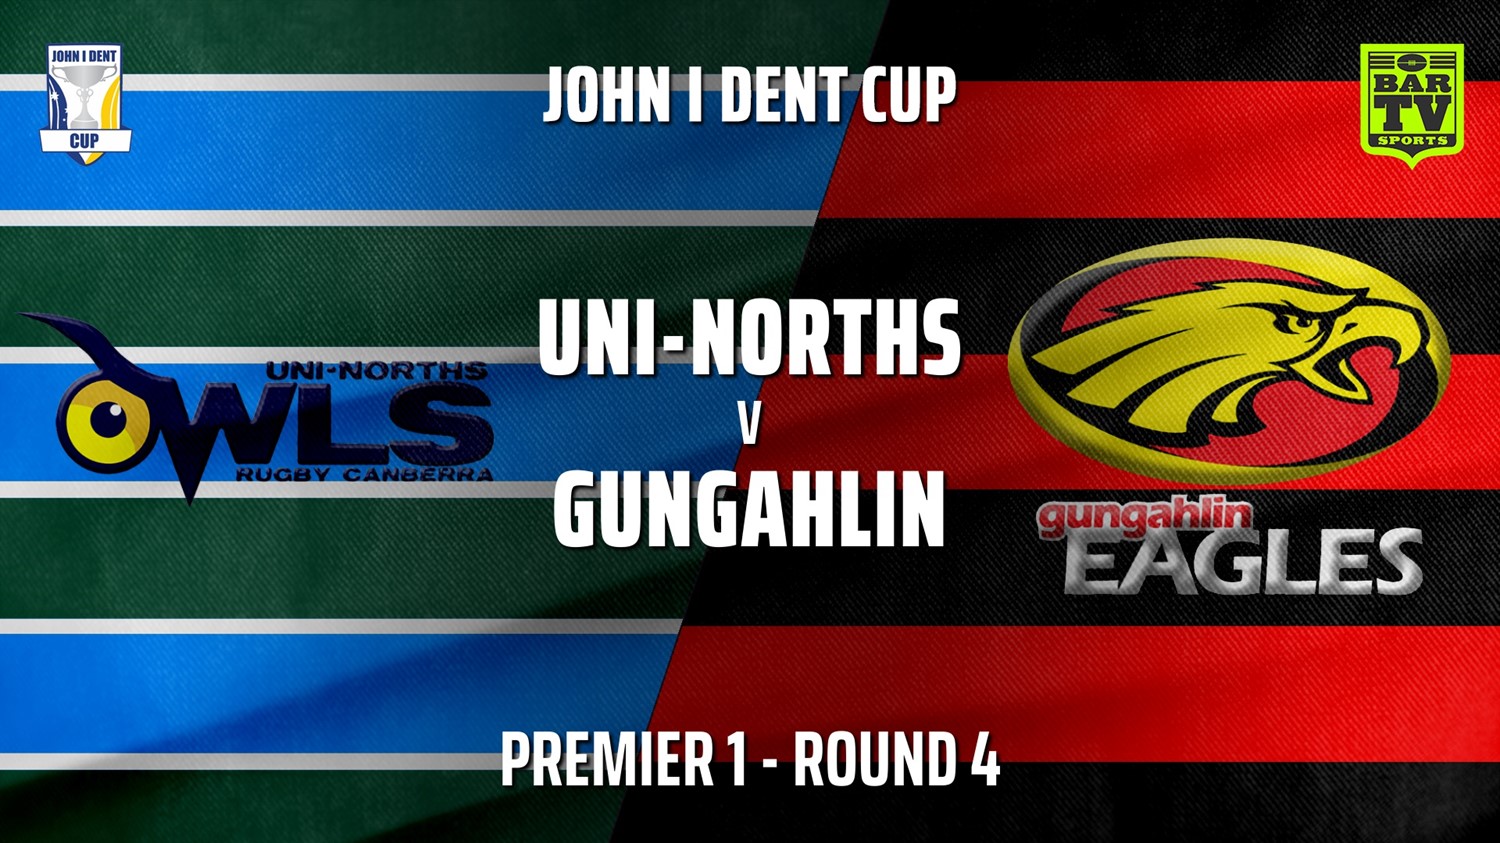 210508-John I Dent Round 4 - Premier 1 - UNI-Norths v Gungahlin Eagles Minigame Slate Image